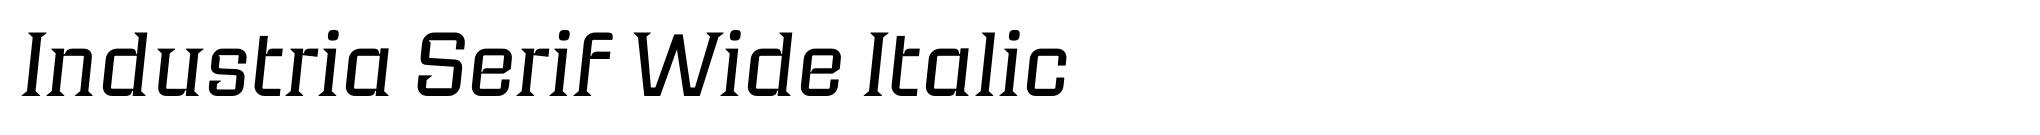 Industria Serif Wide Italic image